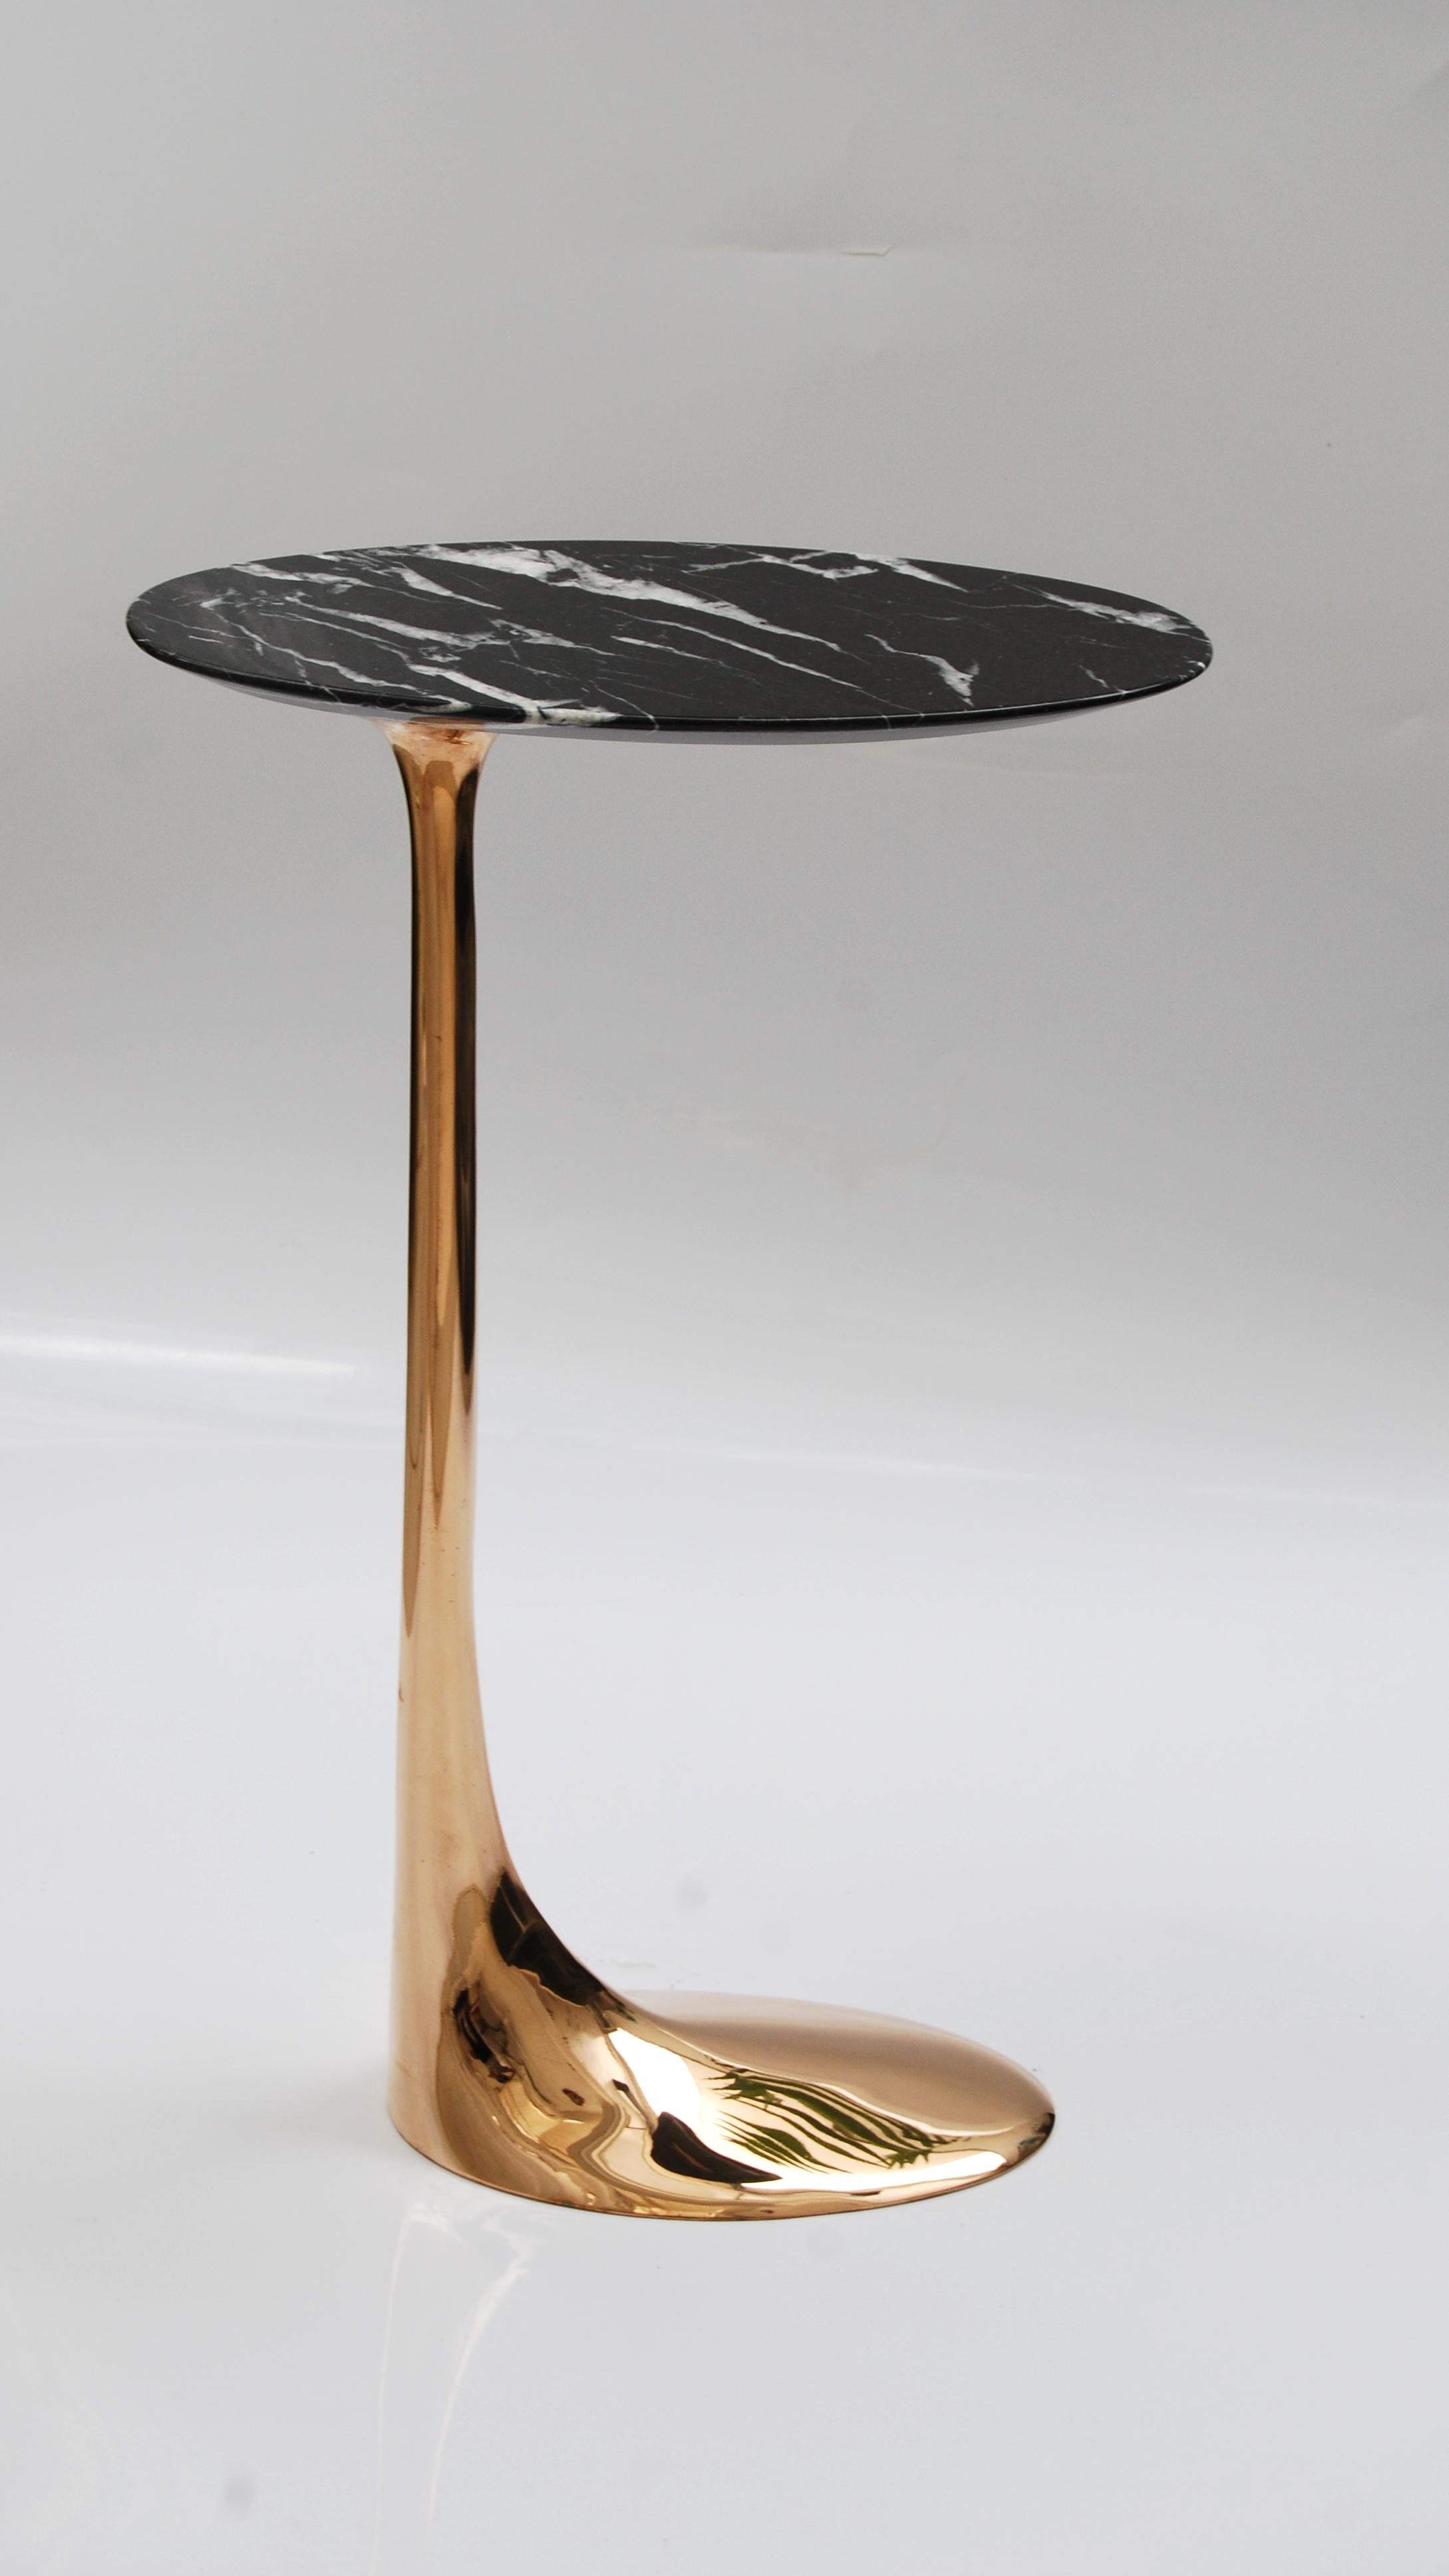 Tisch aus polierter Bronze mit Platte aus Marquina-Marmor von Fakasaka Design
Abmessungen: B 18 x T 38 x H 62 cm
MATERIALIEN: Polierte Bronze, Nero Marquina Marmor.

